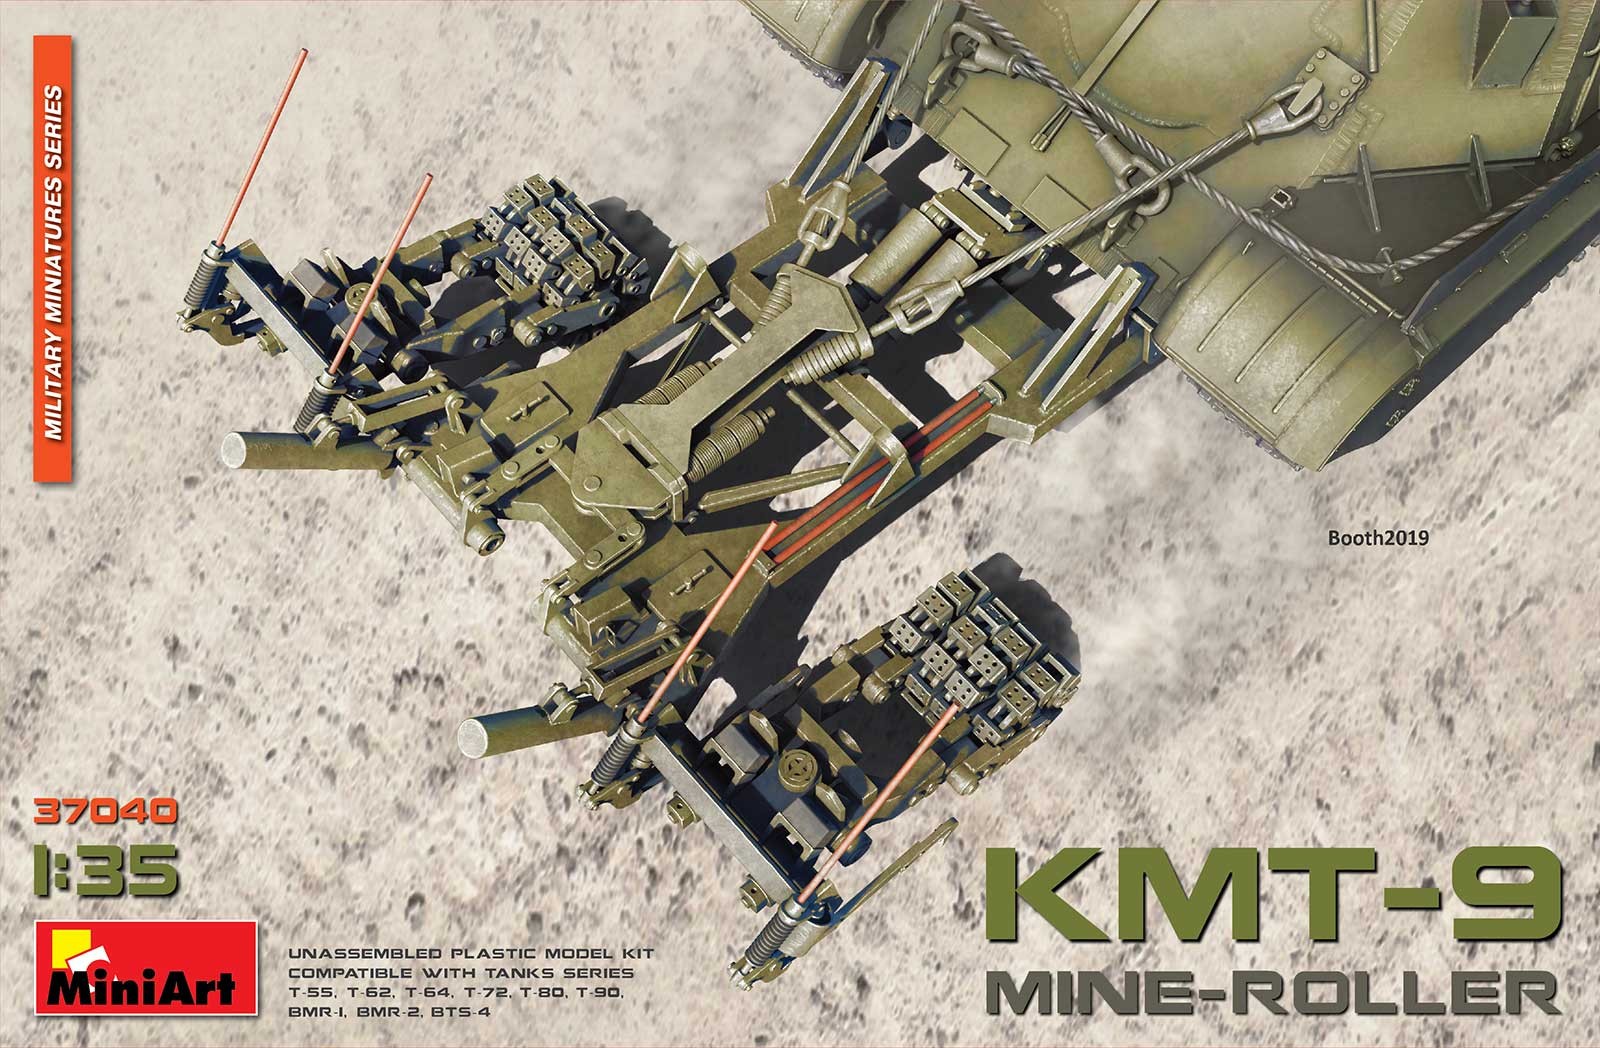  Mini Art KMT-9 MINE-ROLLER (POUR LA LIBÉRATION DE JUIN !!!) MODÈLES 